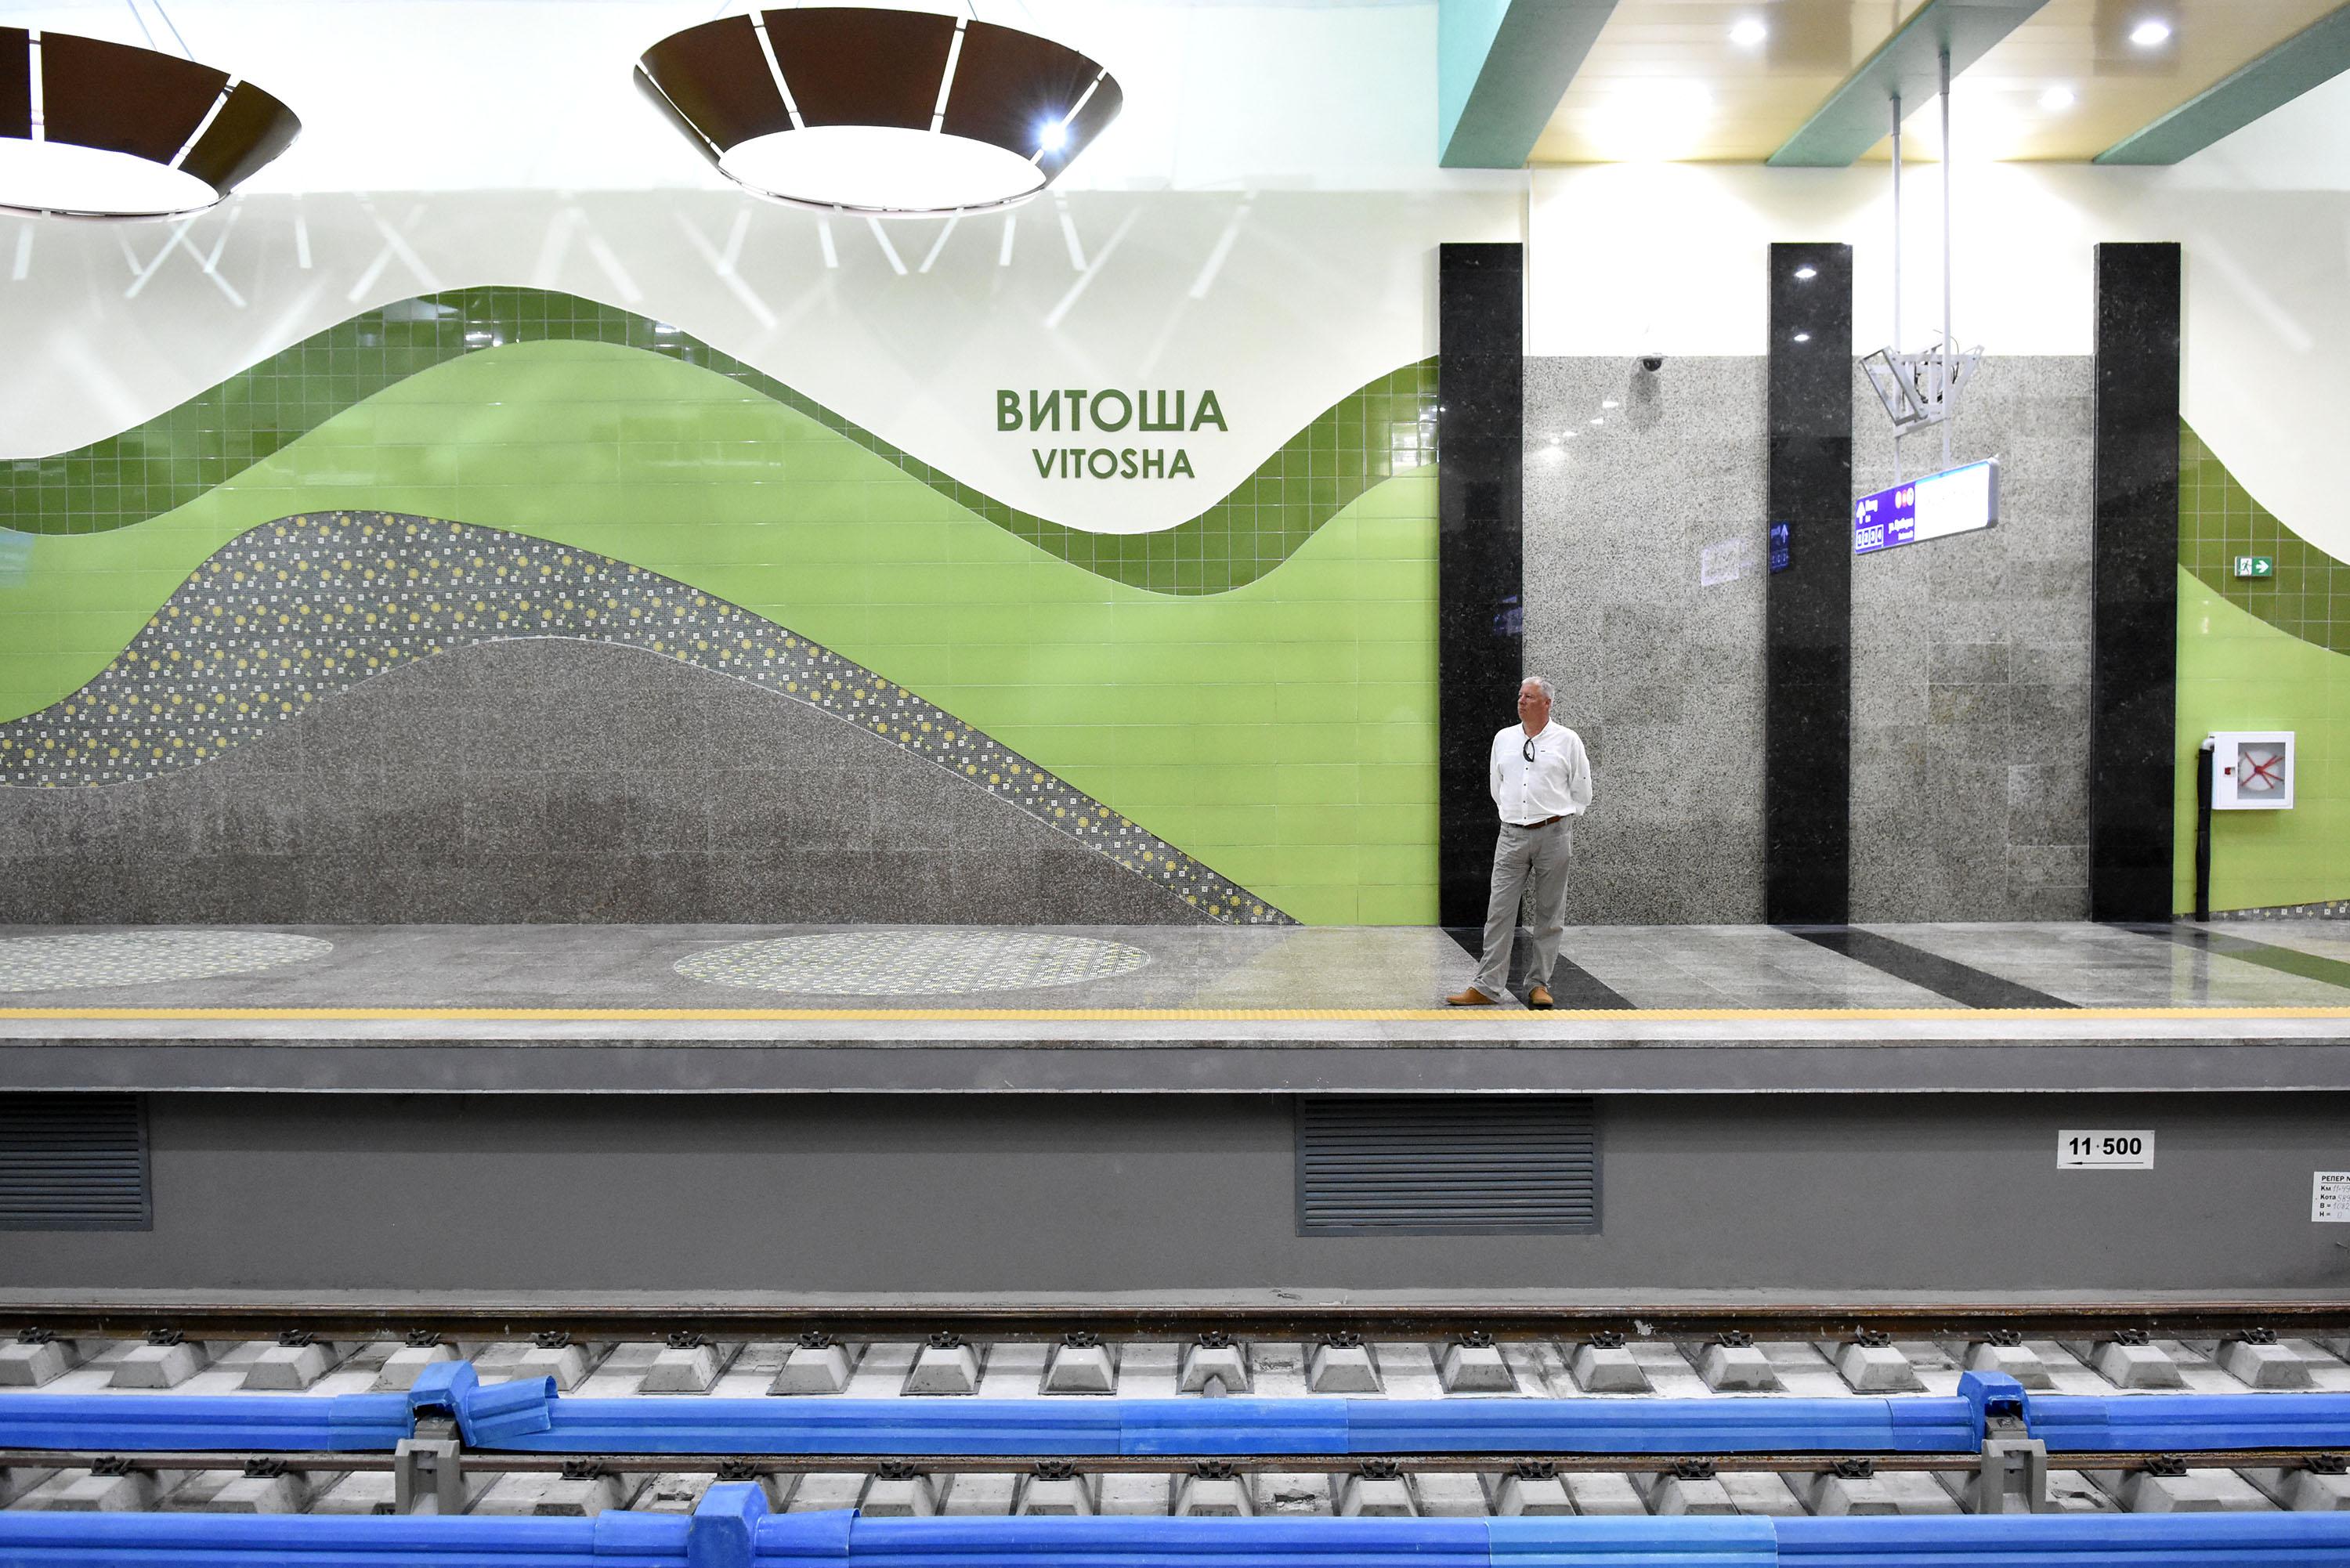 Метростанция ”Витоша” се бъде открита до края на юли